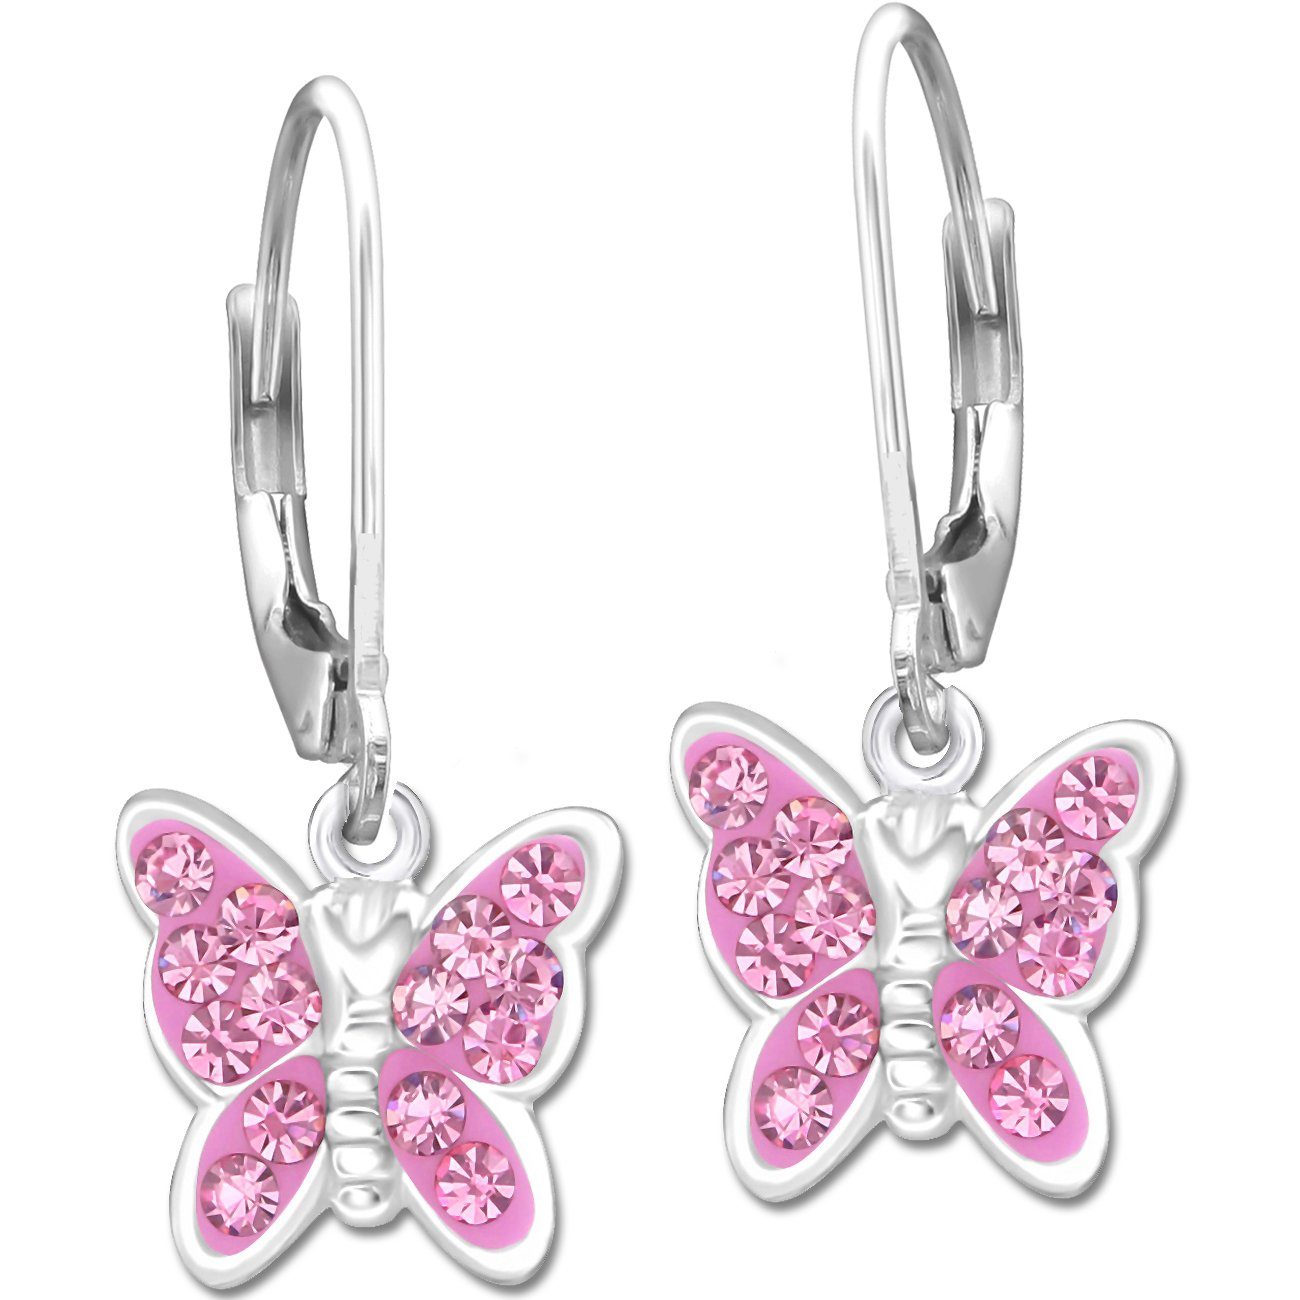 Ohrhänger Kinder Sterling echt Silber Paar Limana Schmetterling Mädchen rosa hängende K653o 925 Ohrringe